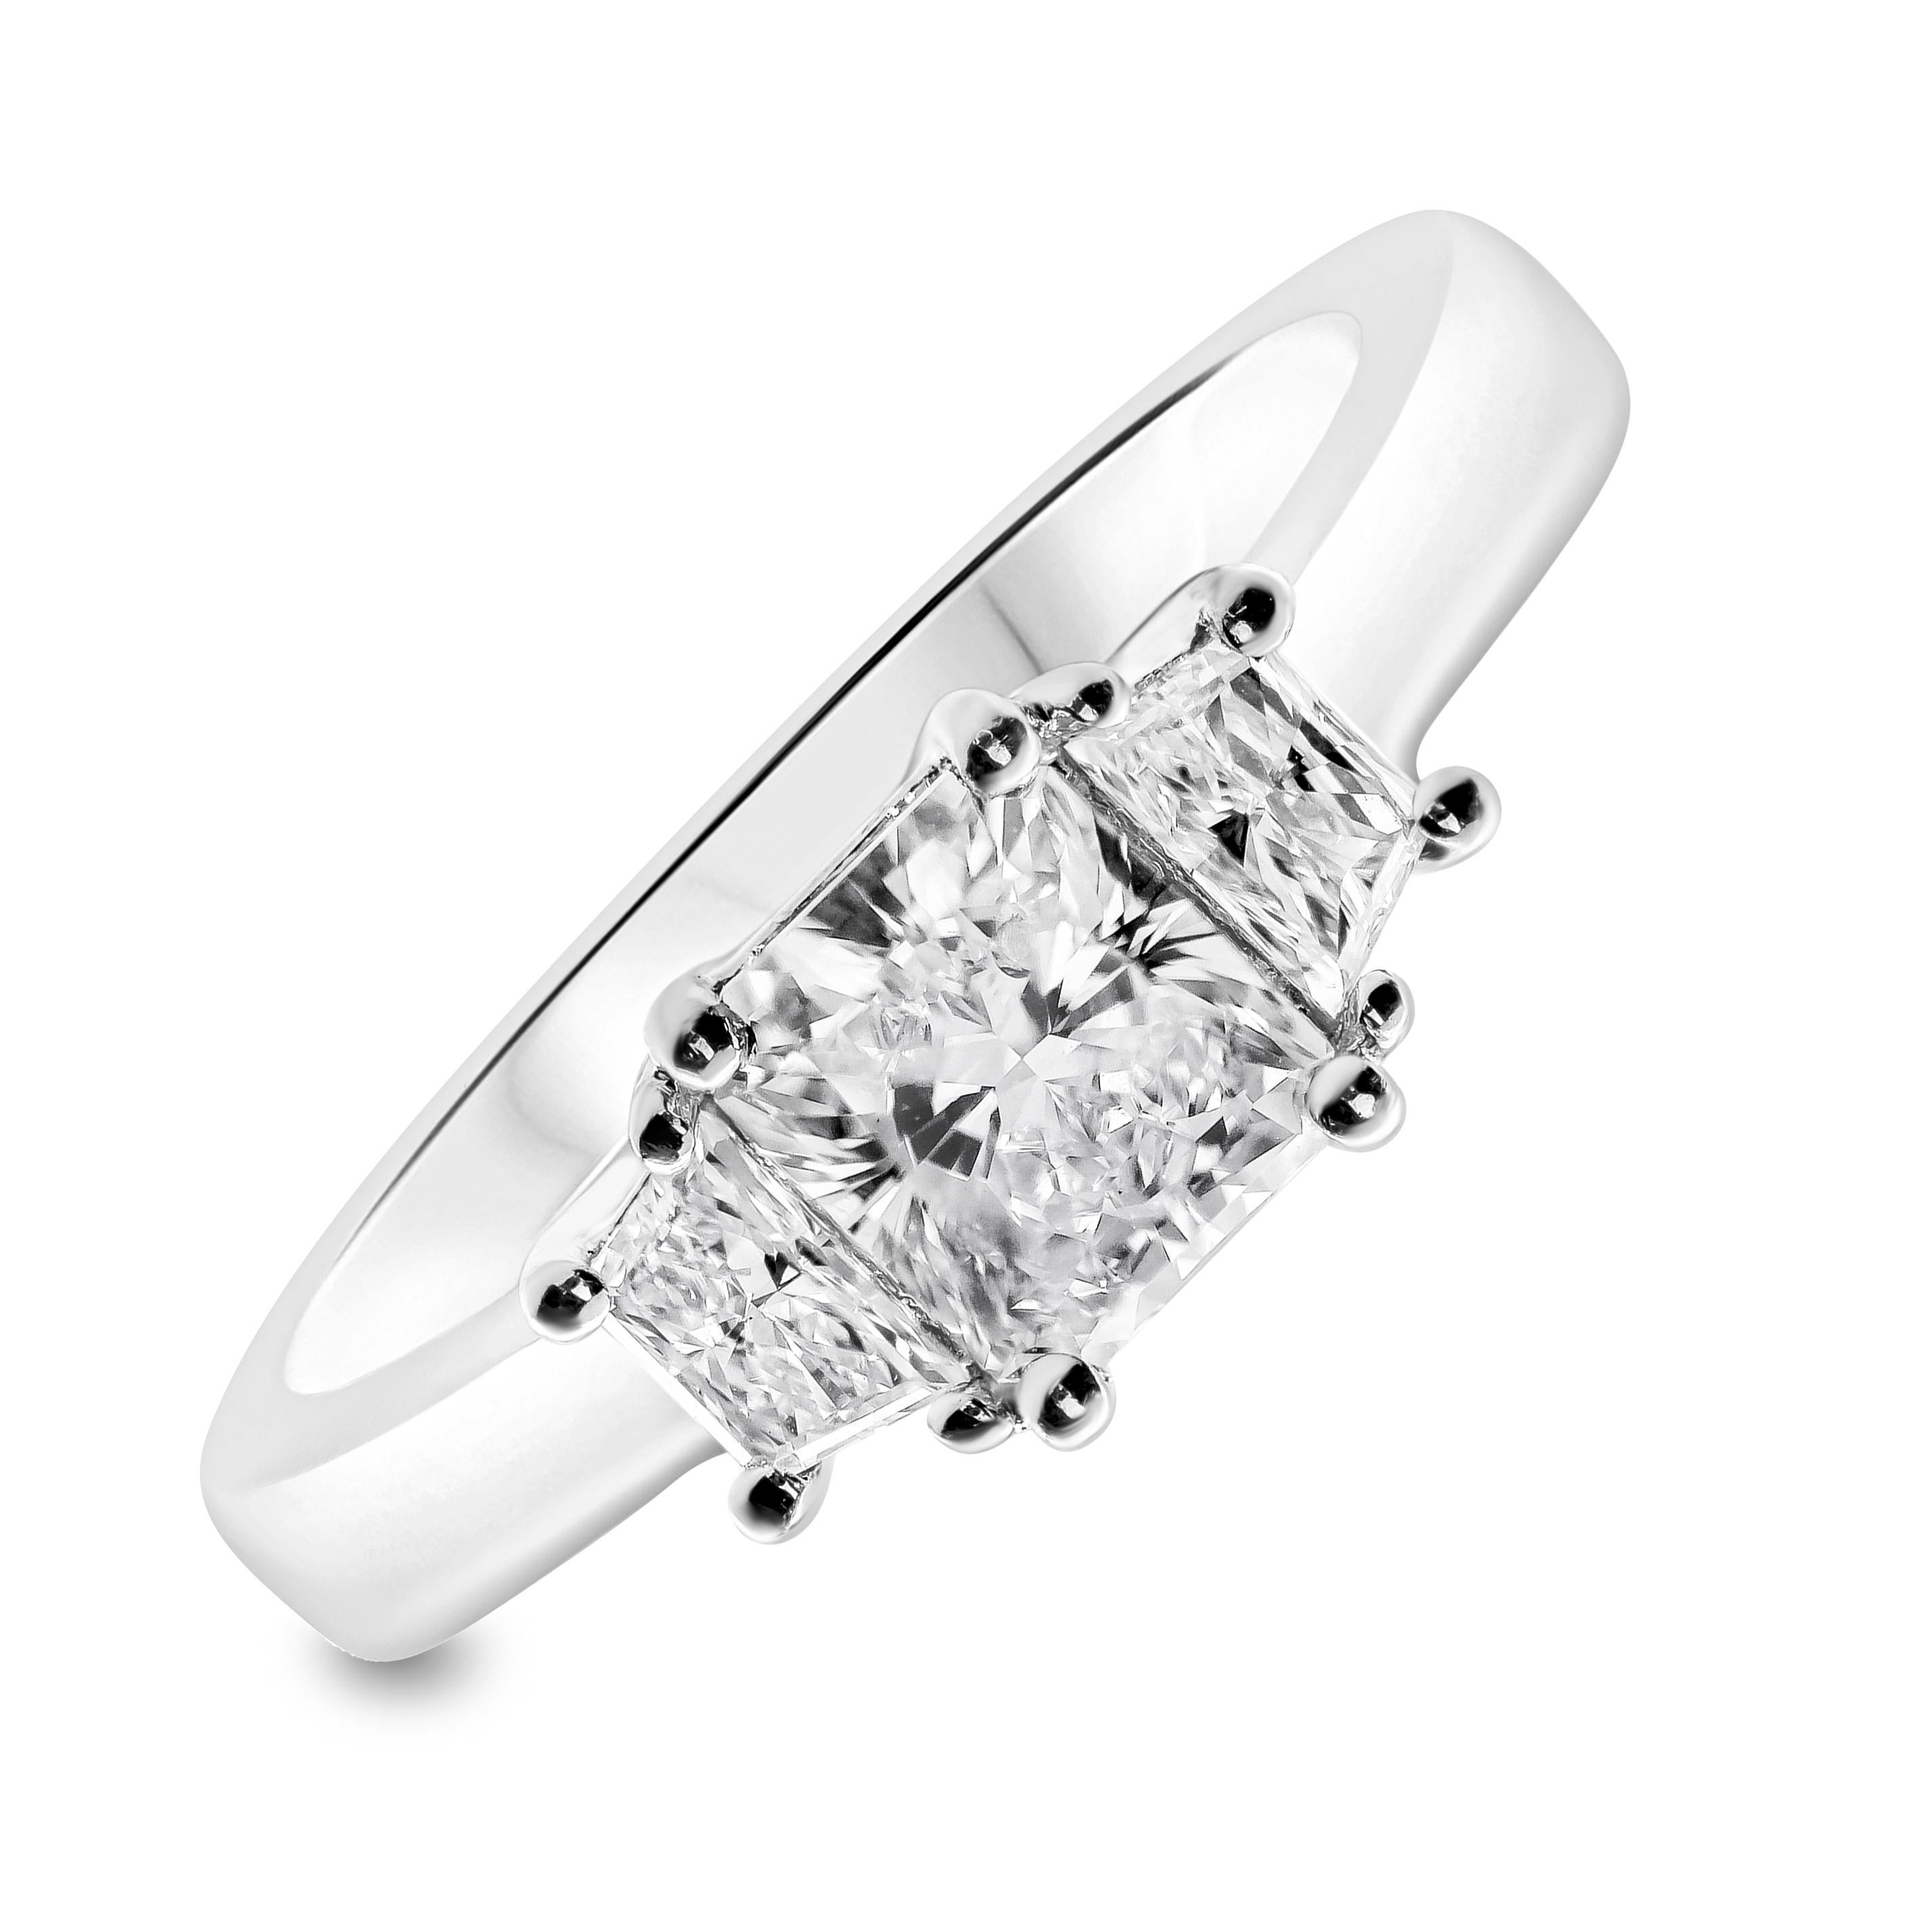 Cette élégante bague de fiançailles à trois pierres présente un diamant central de 1,00 carat de taille rayonnante, flanqué de diamants trapézoïdaux parfaitement assortis de part et d'autre. Les diamants trapézoïdaux pèsent 0,34 carat au total.